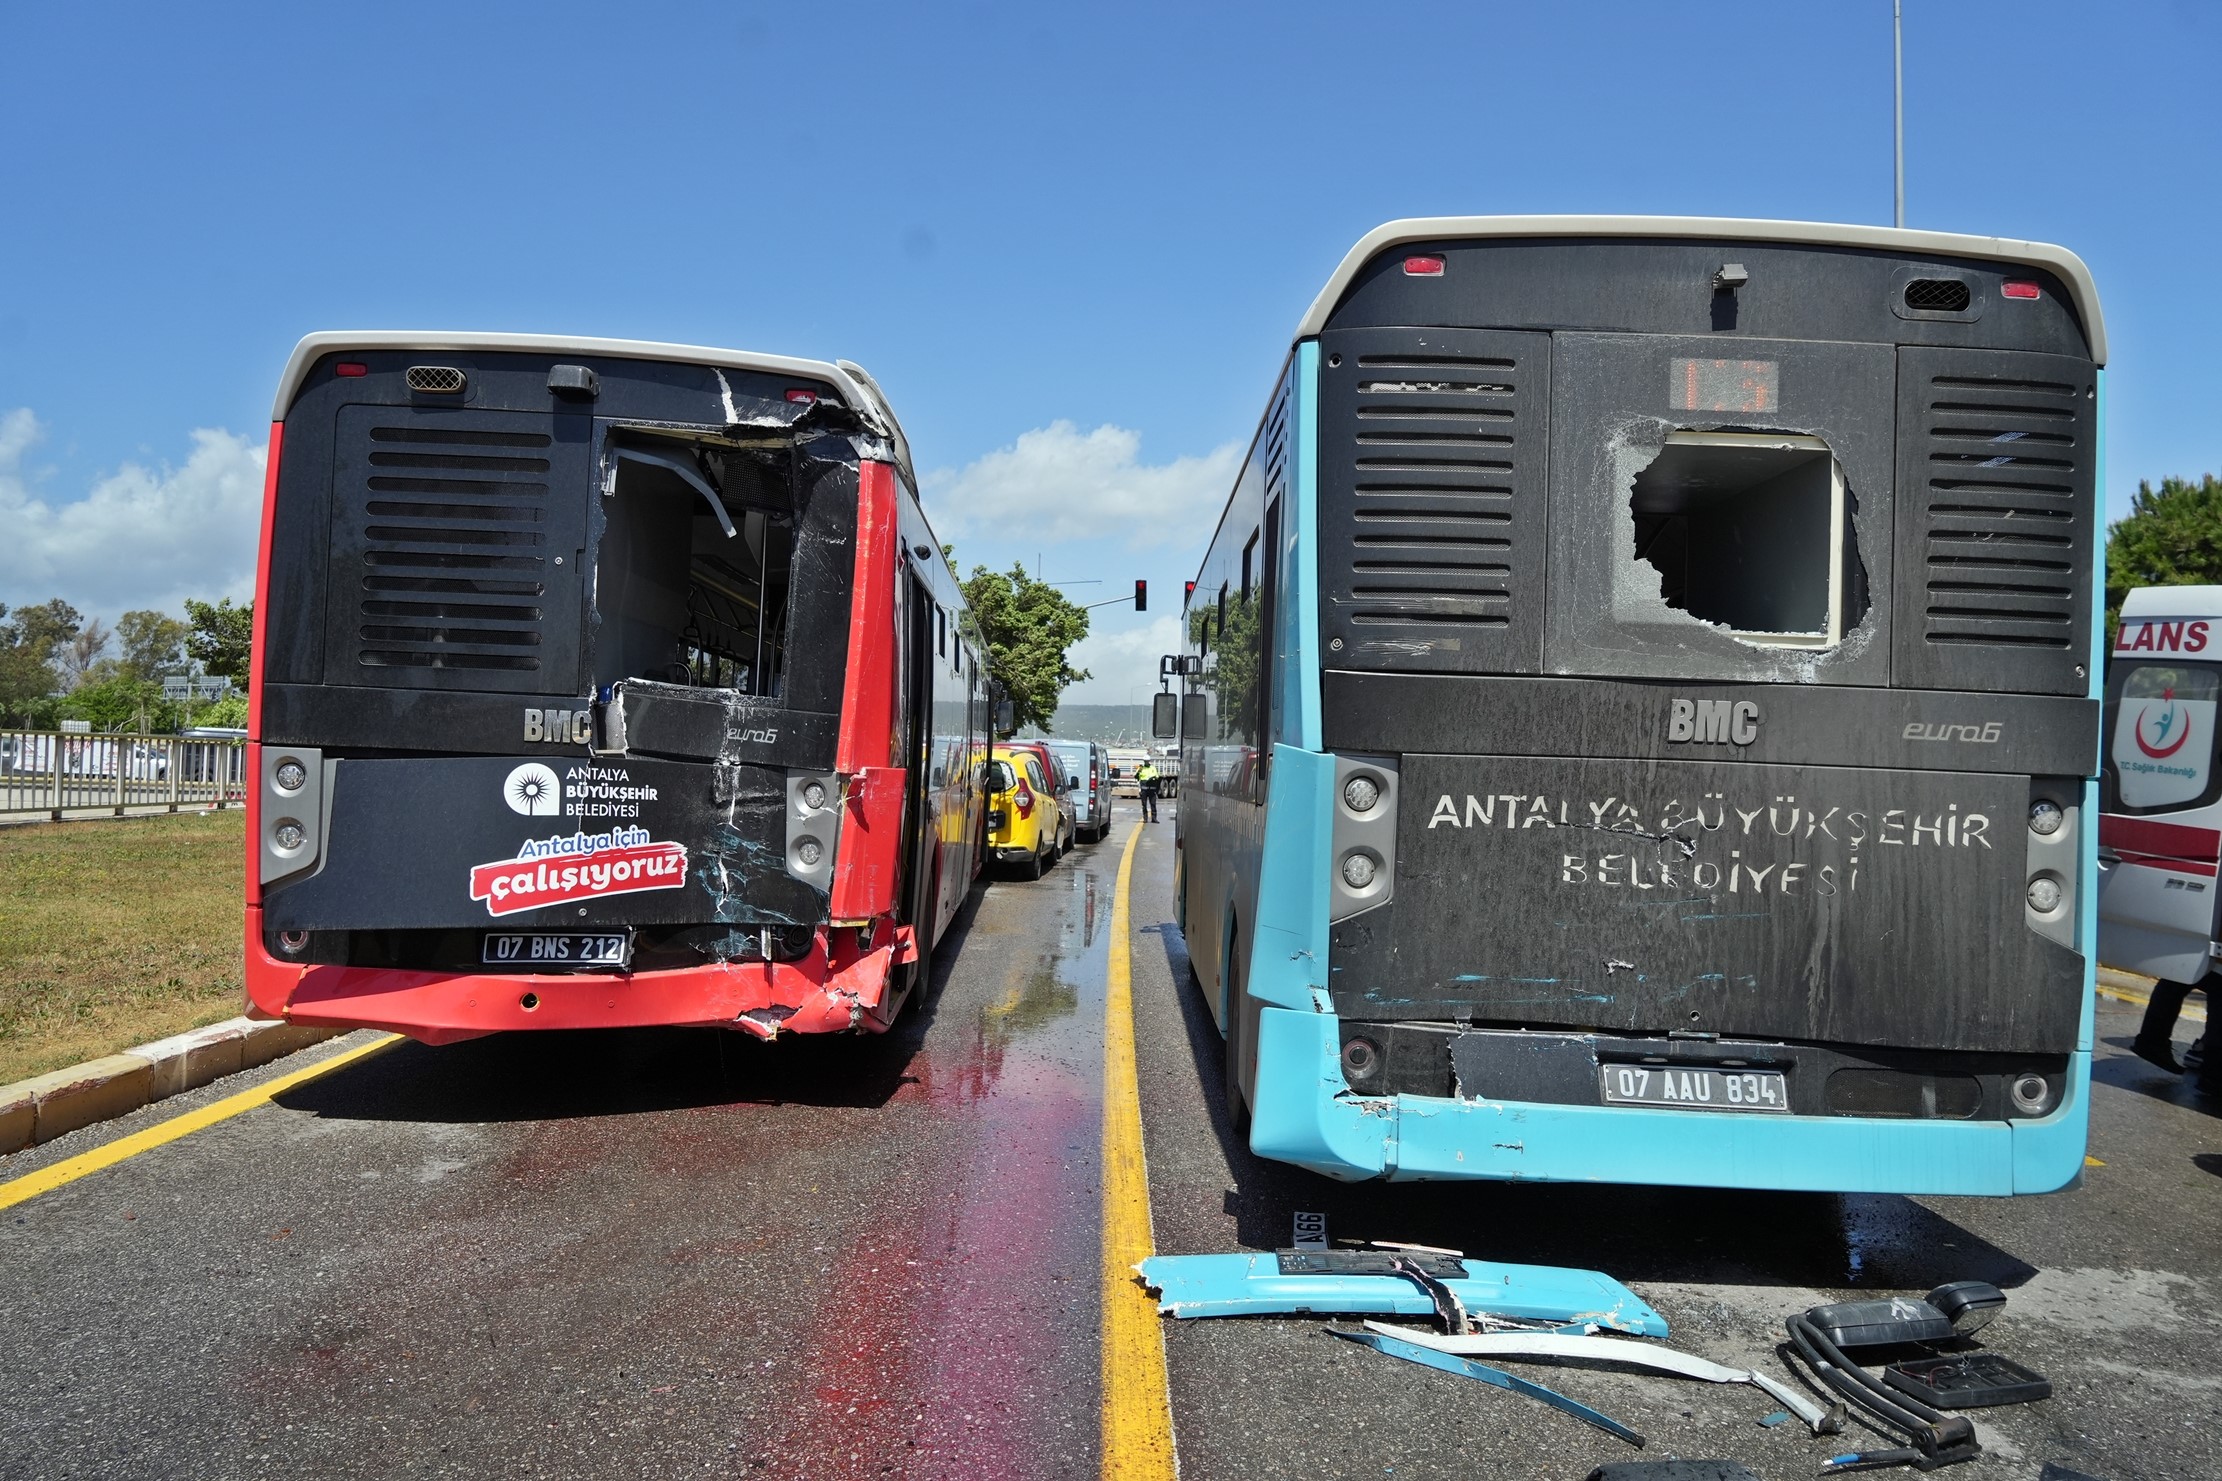 Halk Otobüsü Kırmızı Işıkta Bekleyen Araçlara Daldı: 7 Araç Birbirine Girdi!